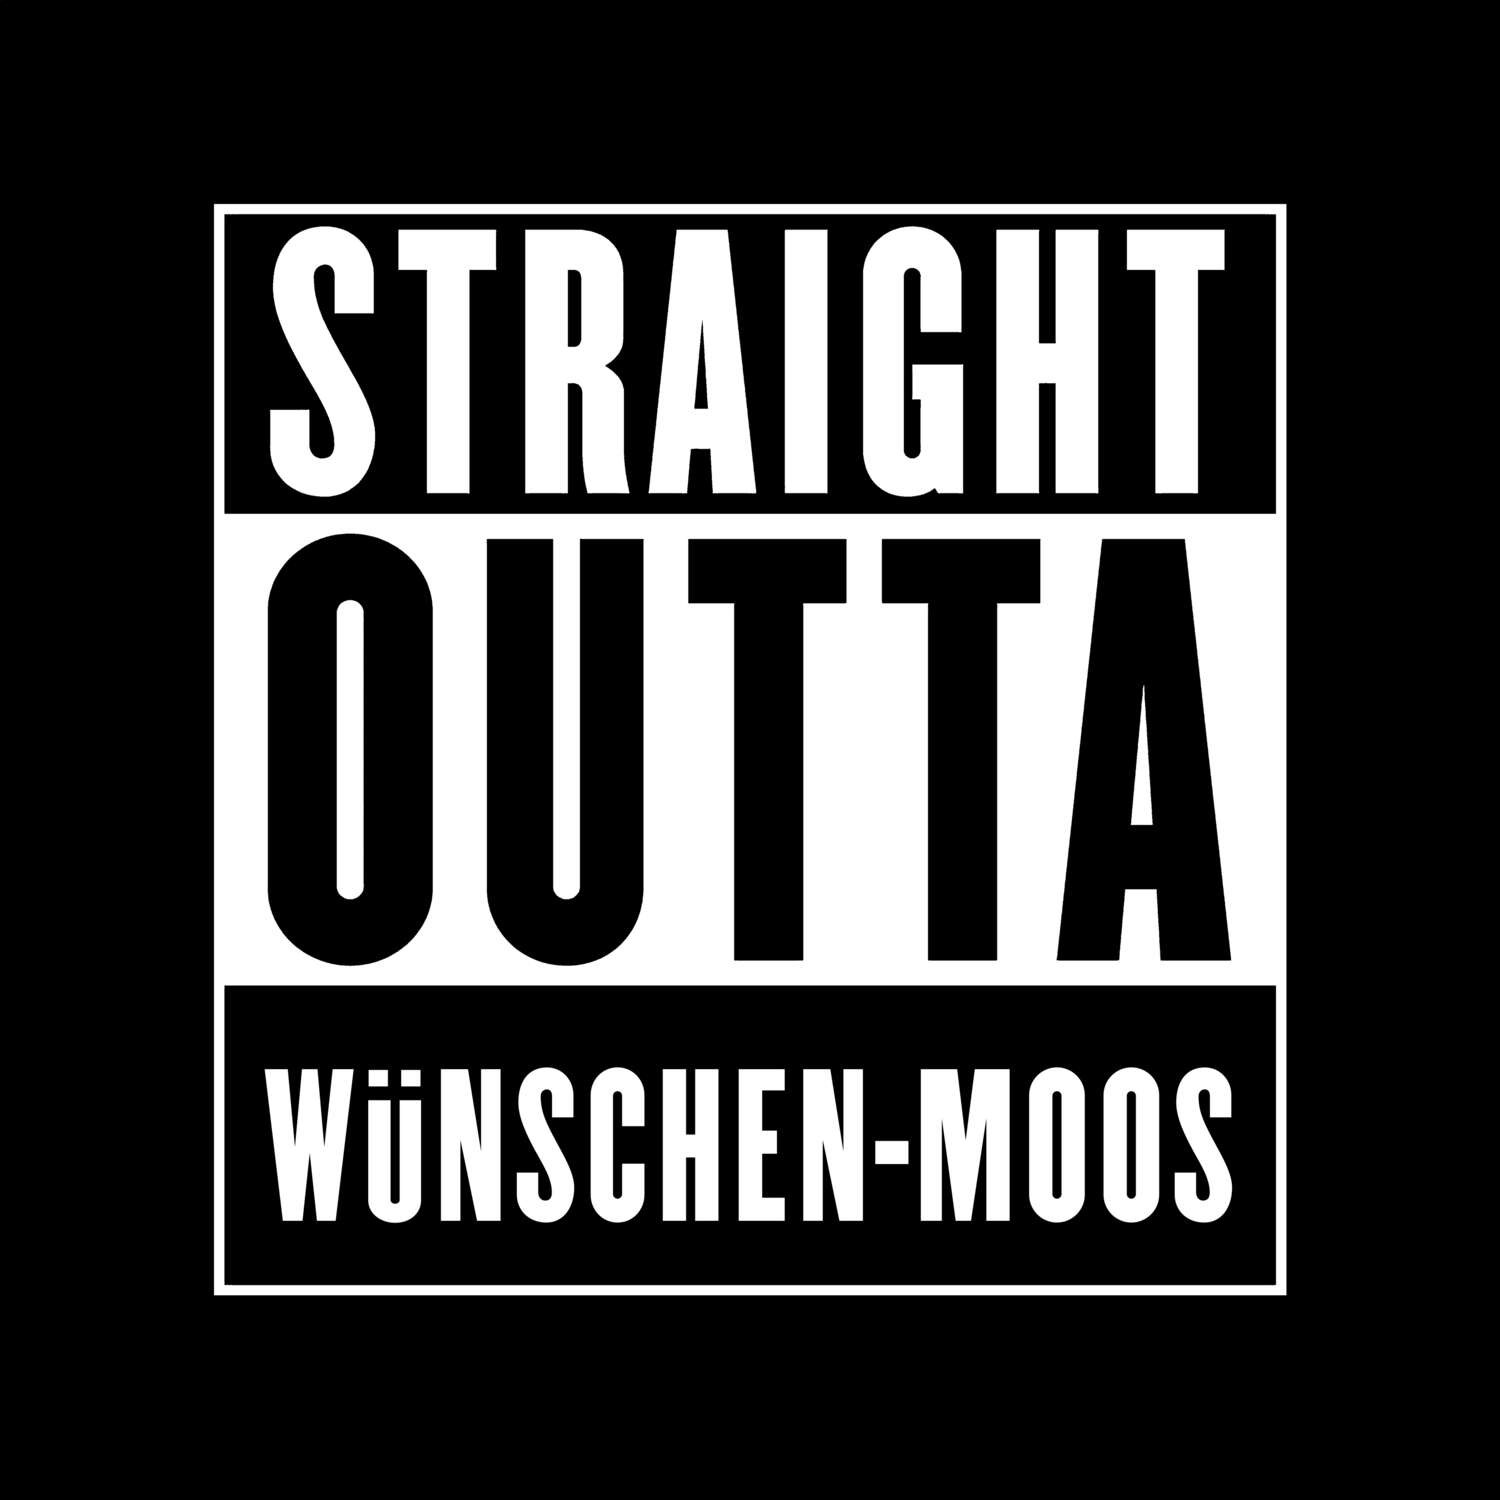 Wünschen-Moos T-Shirt »Straight Outta«